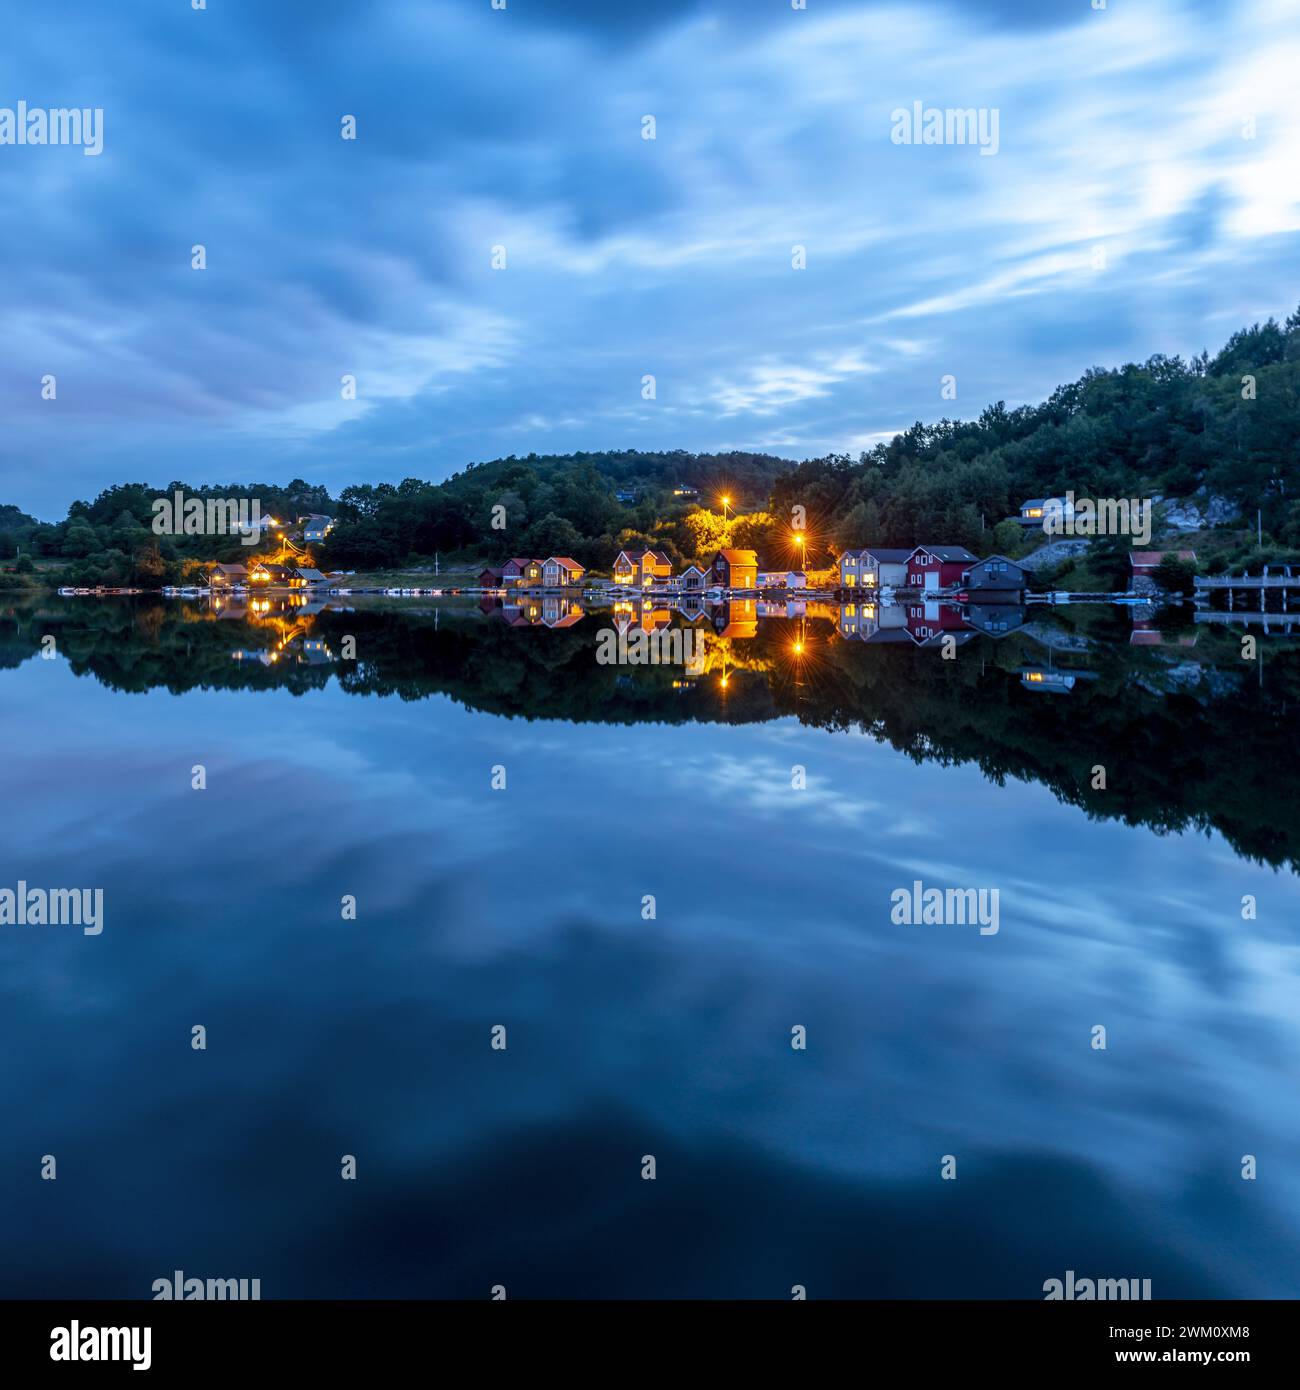 Am Abend spiegeln sich die Lichter der Uferentwicklung in einem spiegelglatten See unter einem blauen, spektakulär bewölkten Himmel. Stockfoto